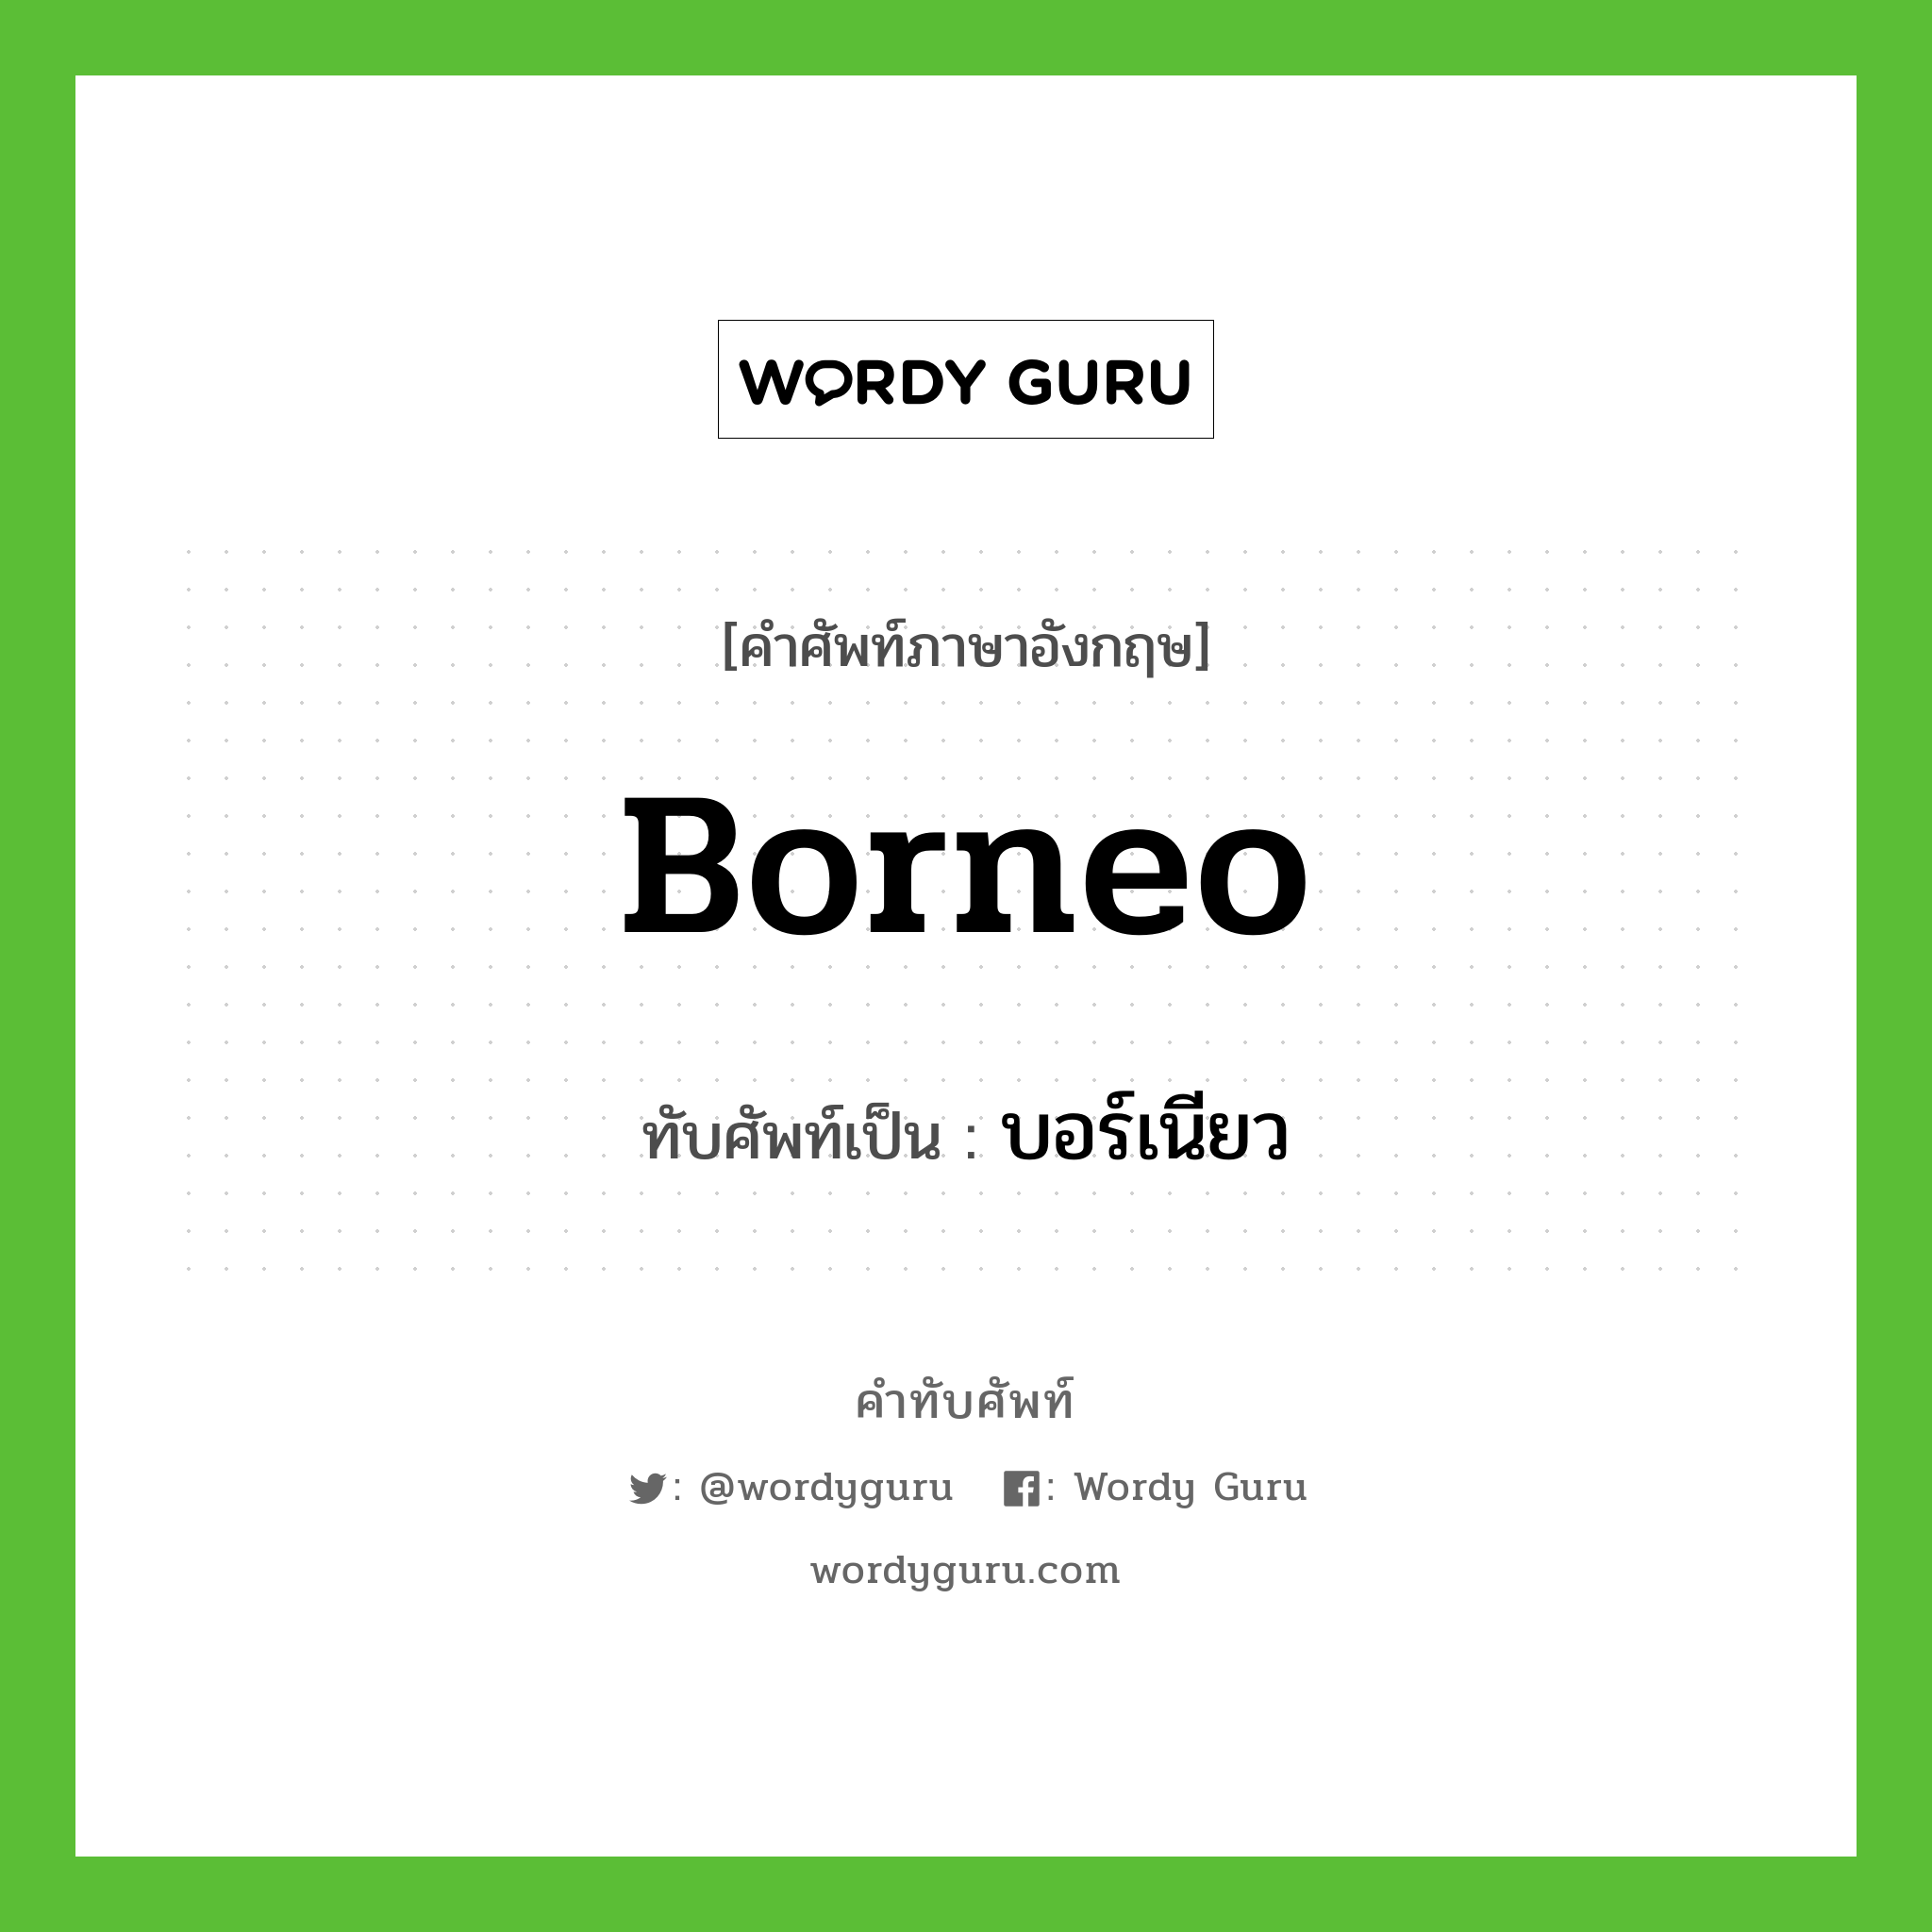 Borneo เขียนเป็นคำไทยว่าอะไร?, คำศัพท์ภาษาอังกฤษ Borneo ทับศัพท์เป็น บอร์เนียว